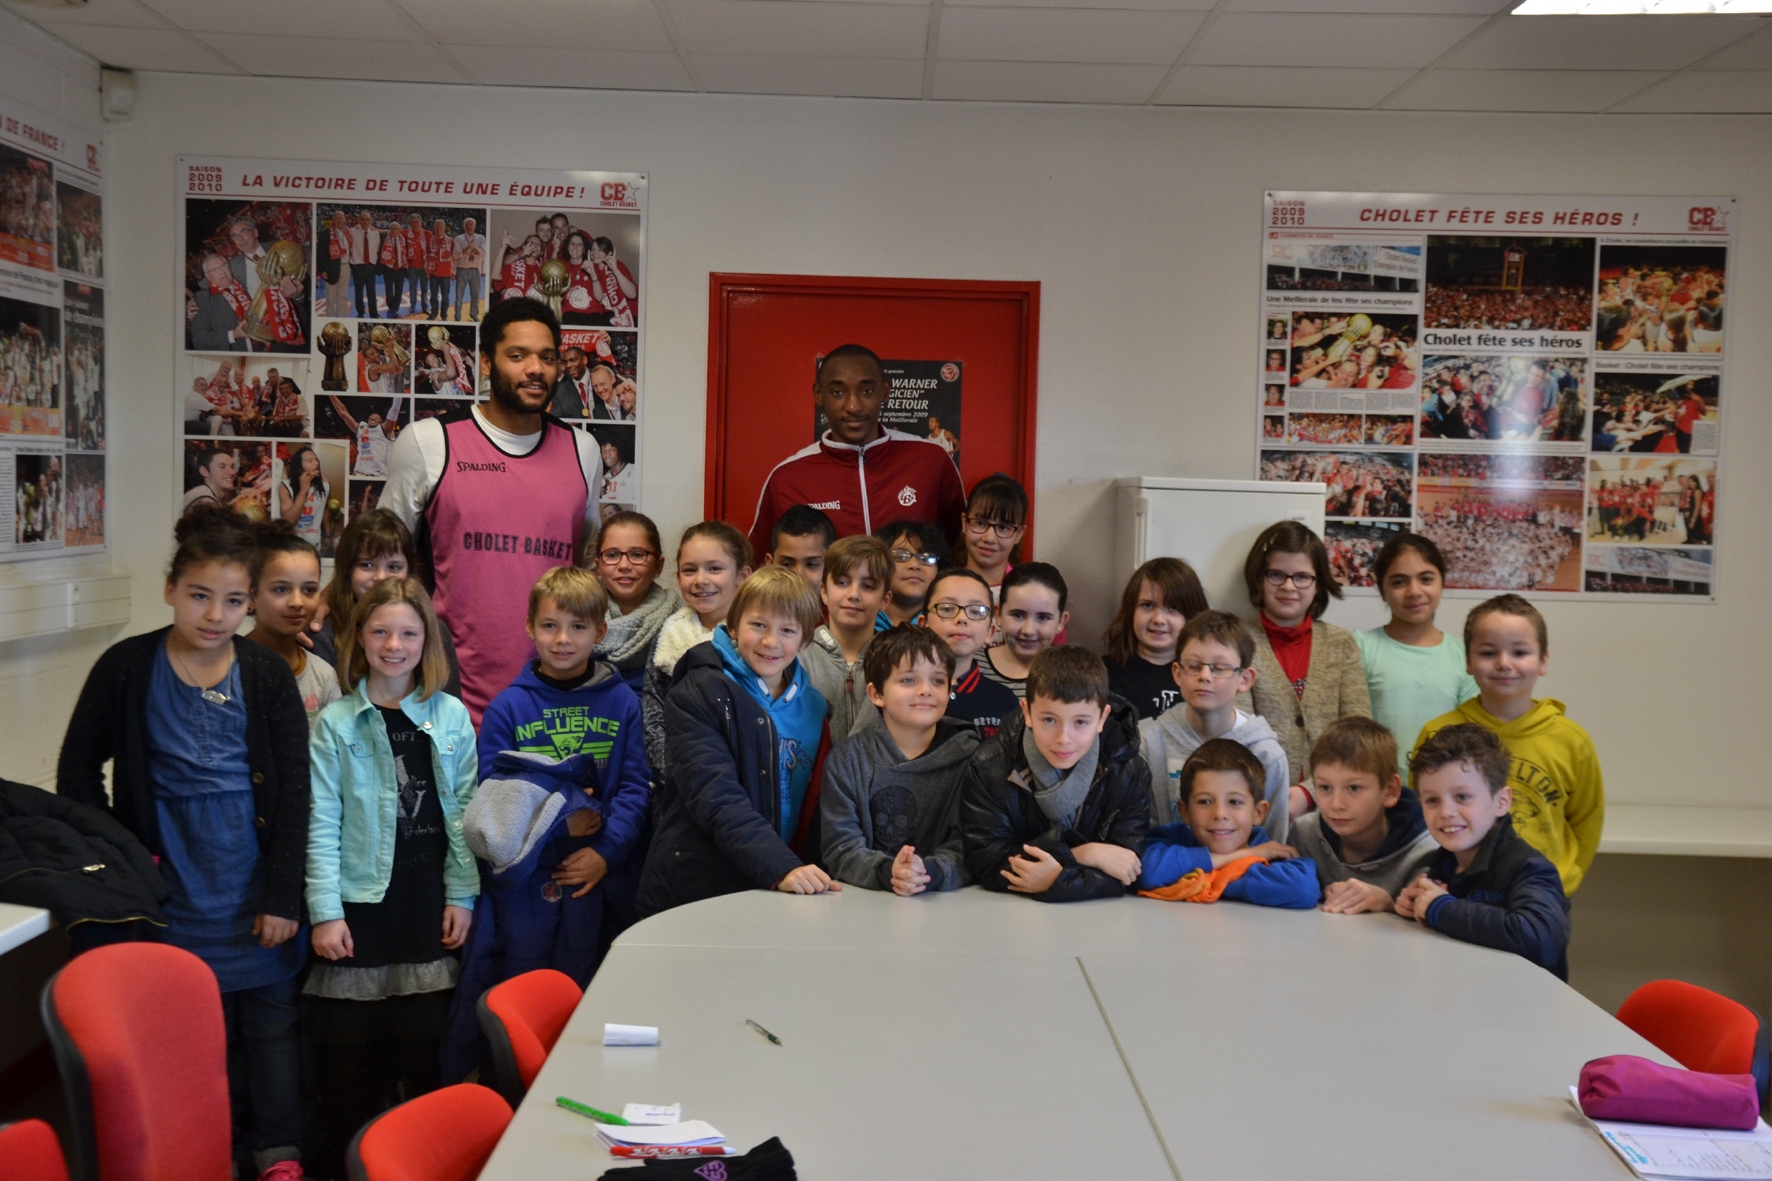 Visite Ecole Le Breloquet - Cholet 26-02-16